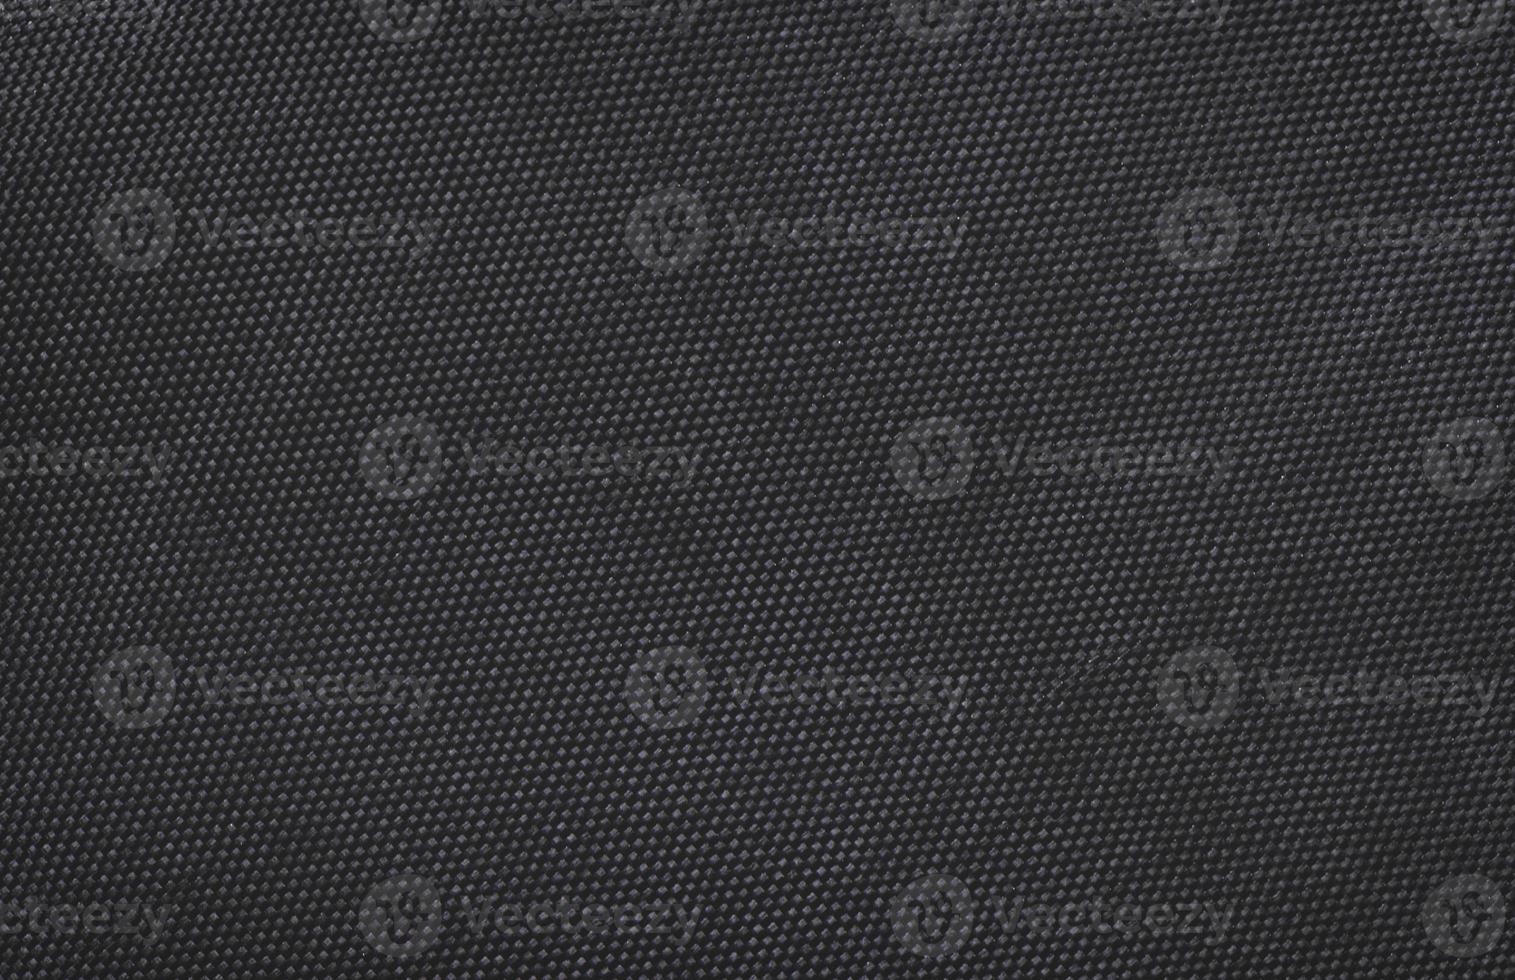 Fondo de textura de seda de lona de tela negra foto